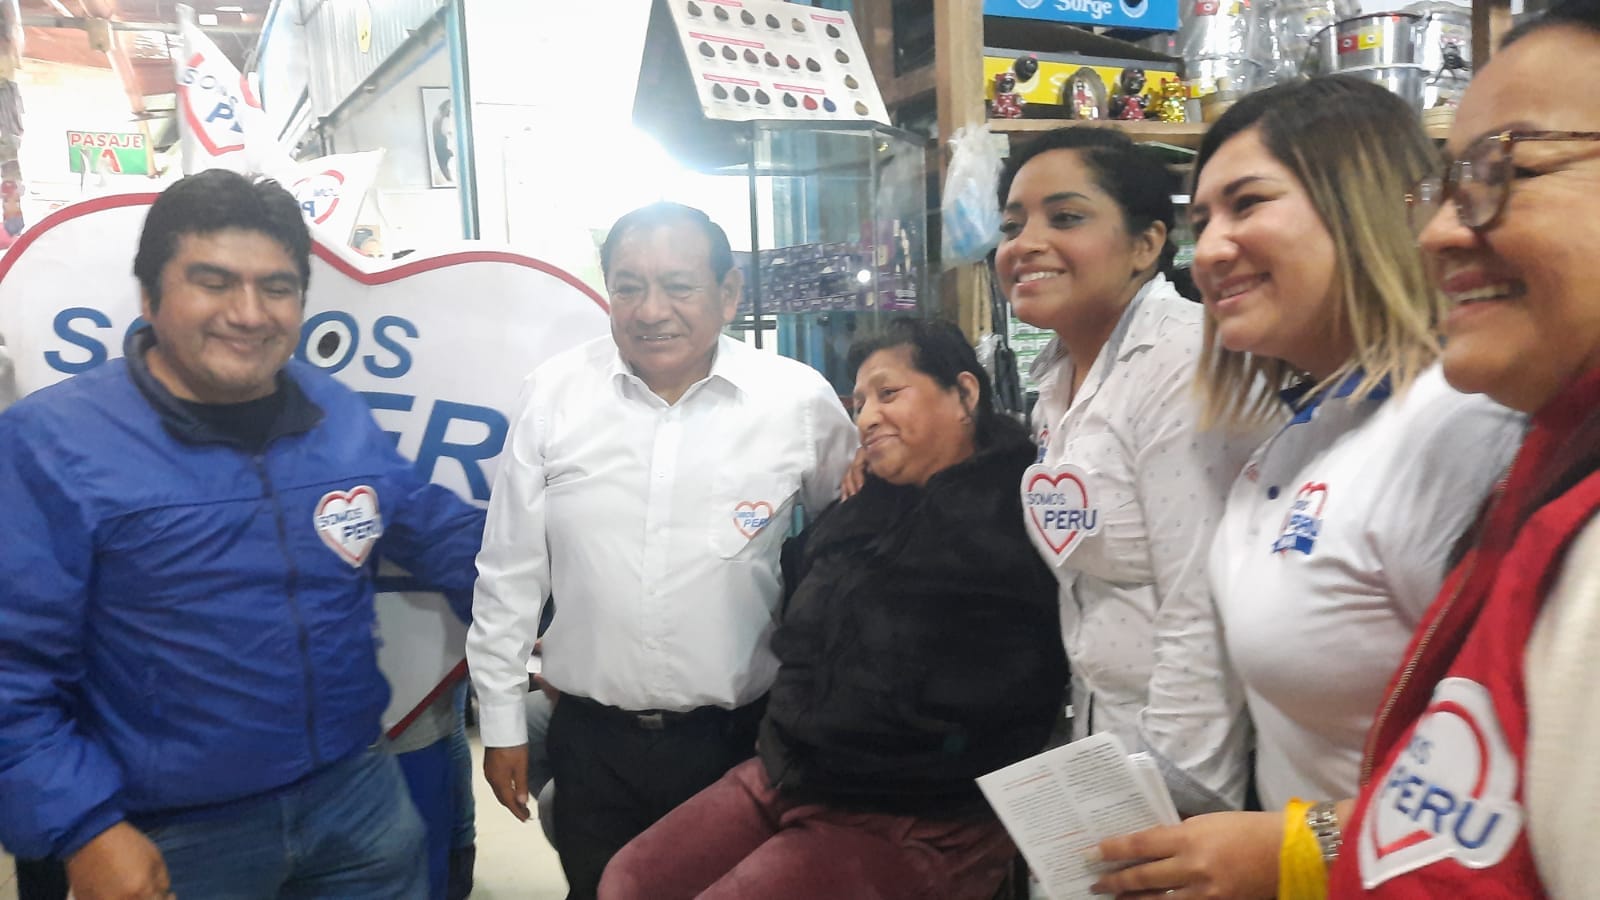 Lanzamiento de Campaña de partido Somos Peru Mala